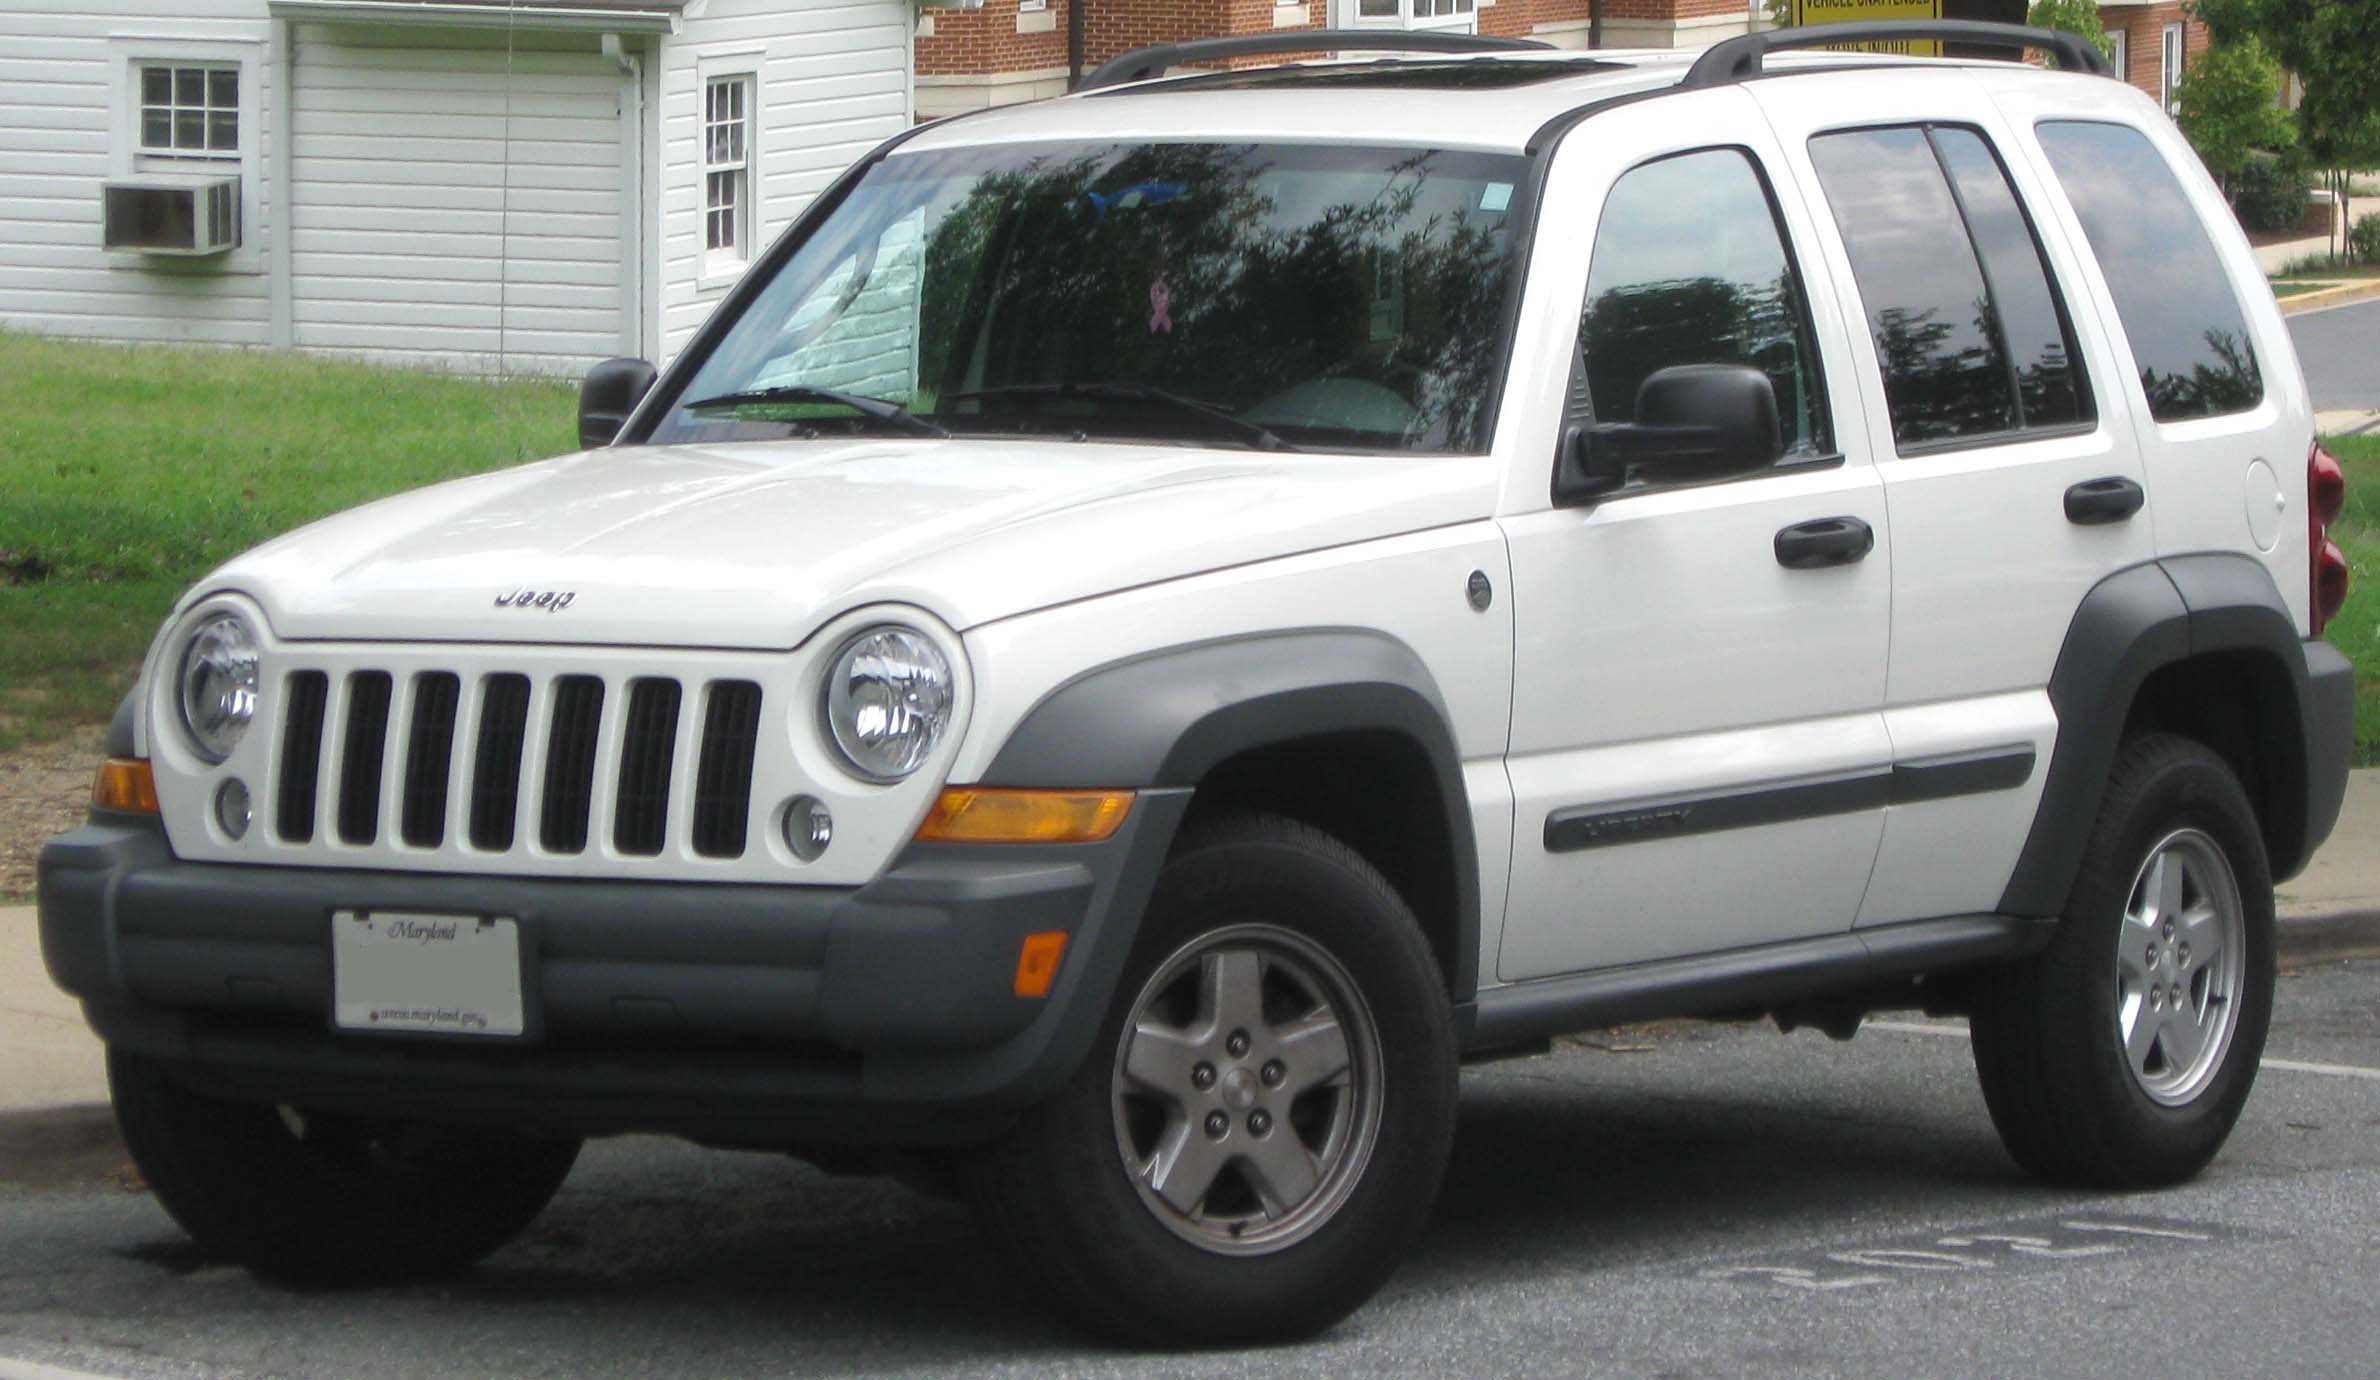 File:2005-2007 Jeep Liberty -- 08-16-2010.jpg - Wikimedia Commons